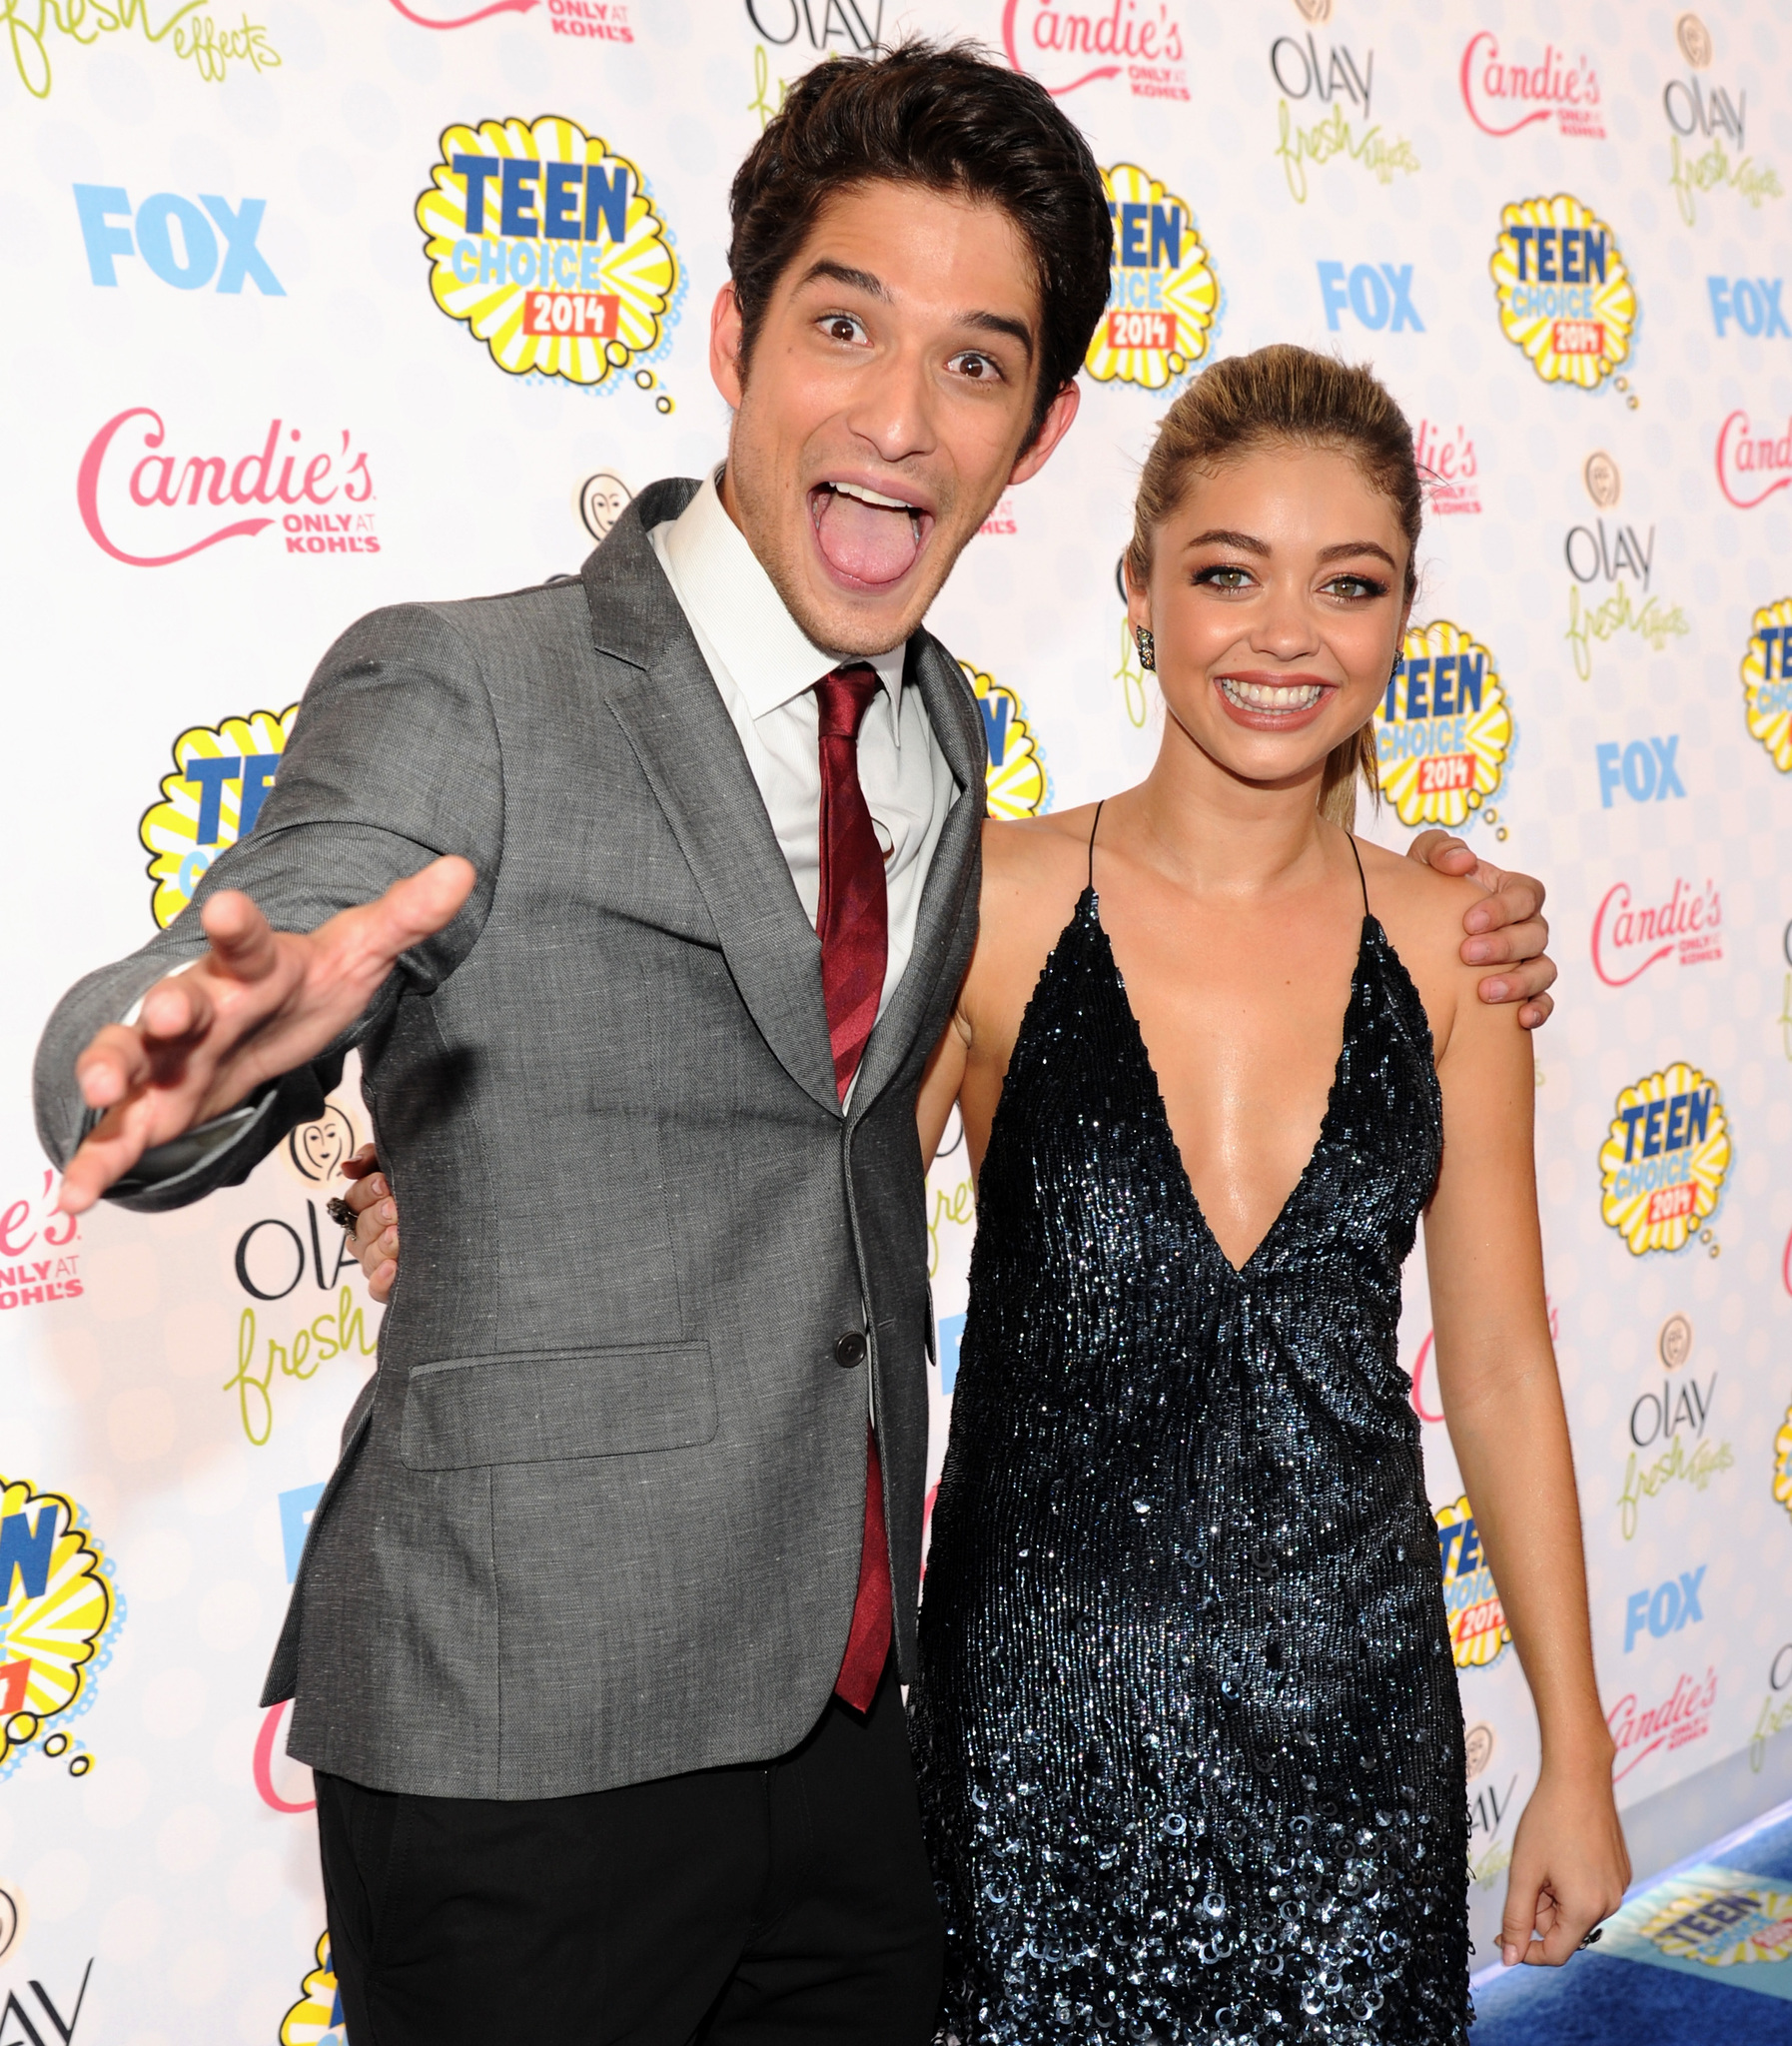 Sarah Hyland and Tyler Posey at event of Teen Choice Awards 2014 (2014)